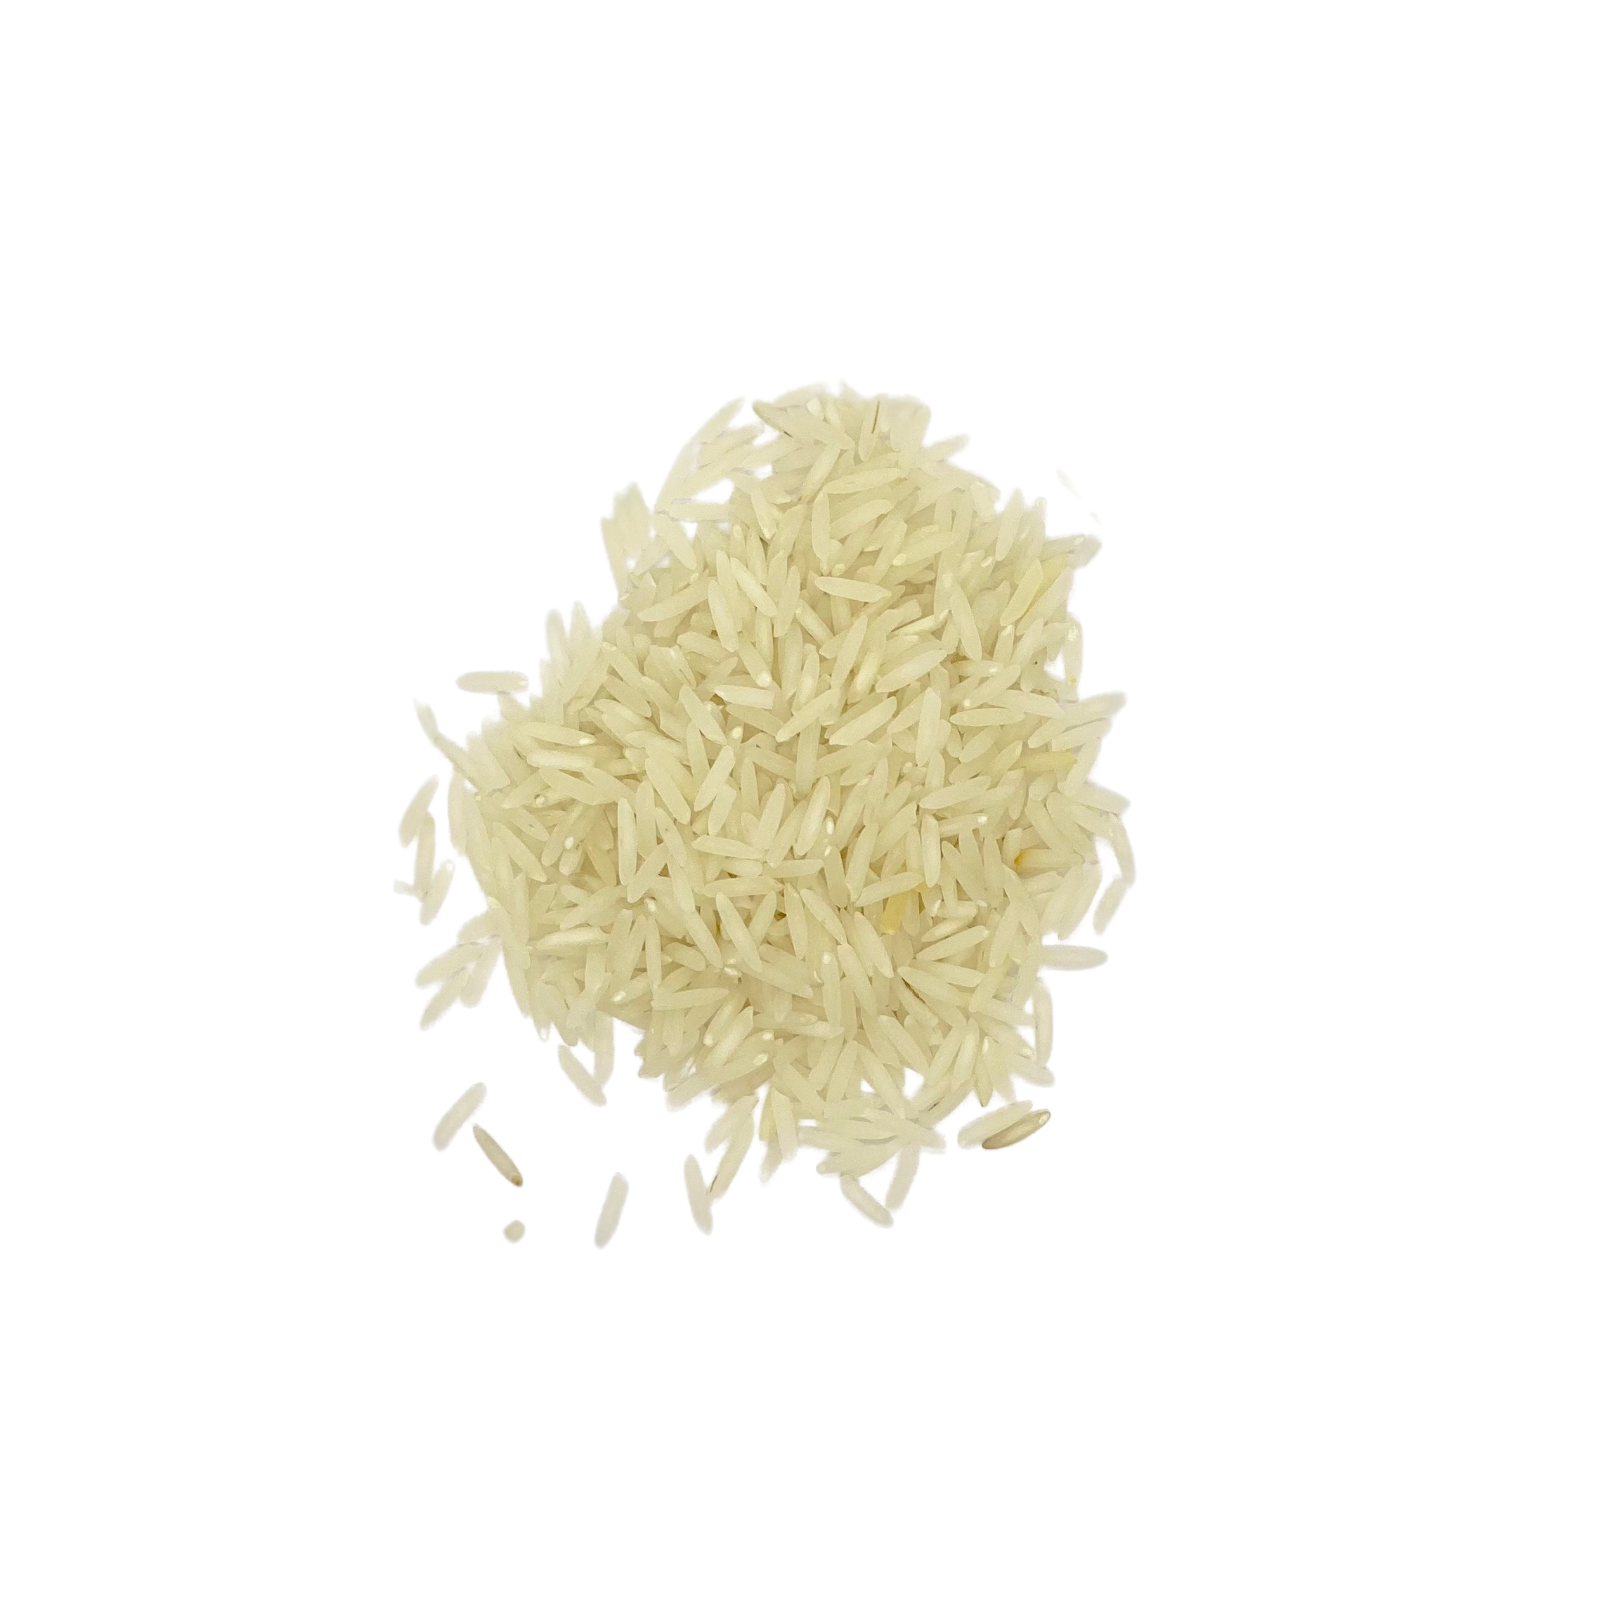 Cuisson du riz basmati : comment cuire du riz basmati blanc ?